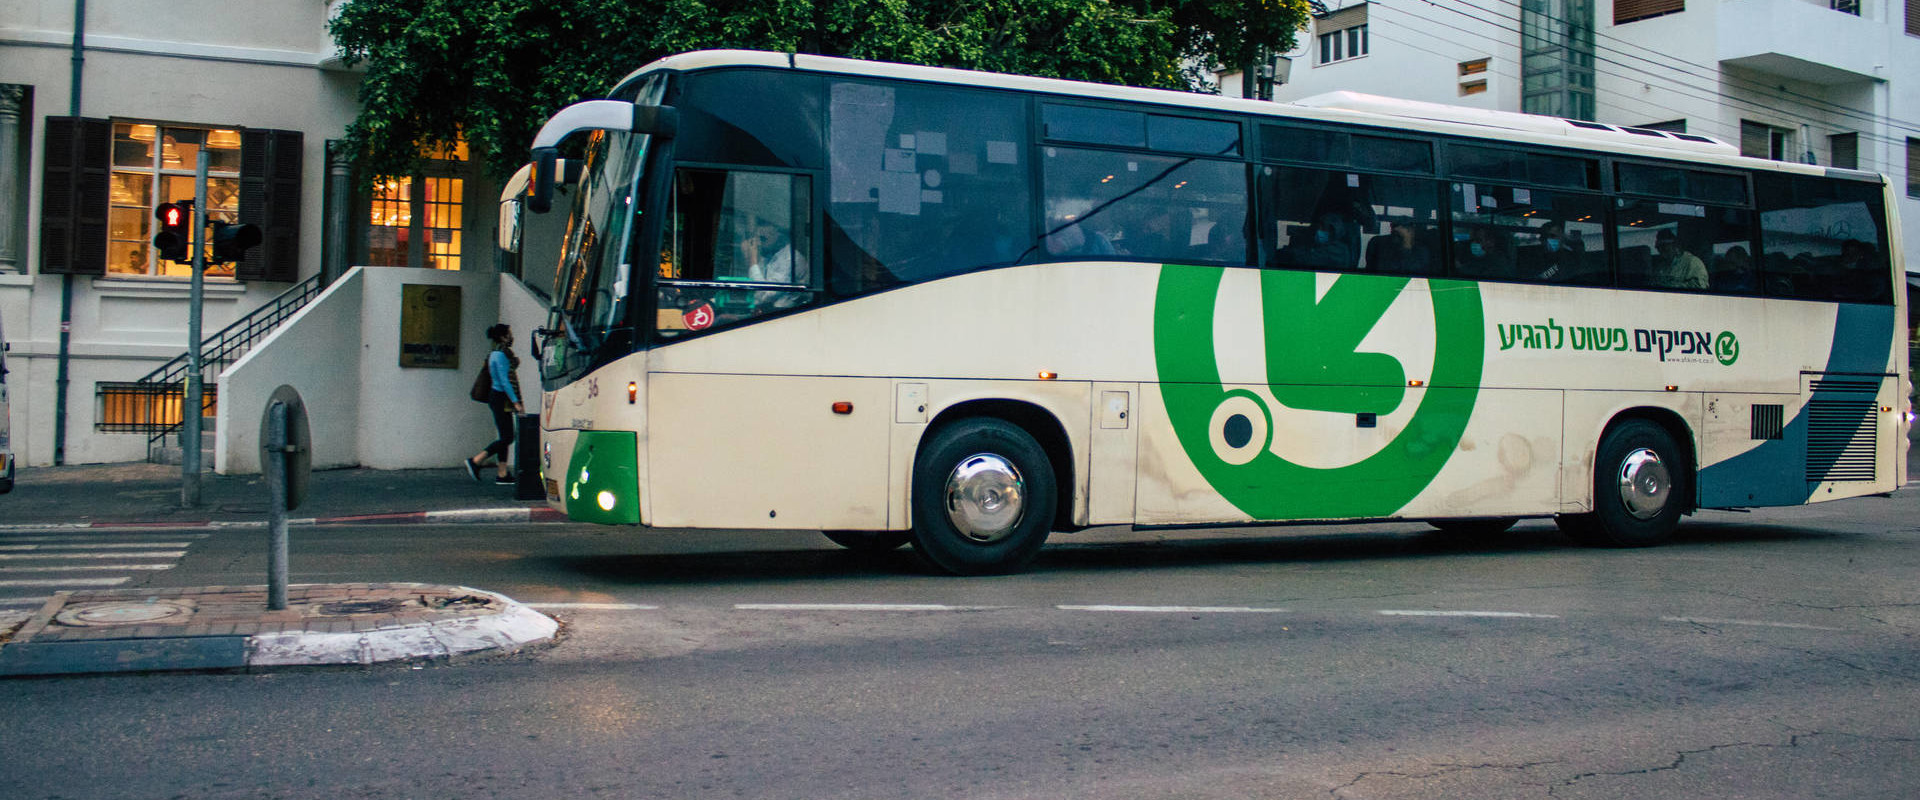 אוטובוס של חברת אפיקים בתל אביב, דצמבר 2020 (צילום: Jose HERNANDEZ Camera 51, shutterstock)